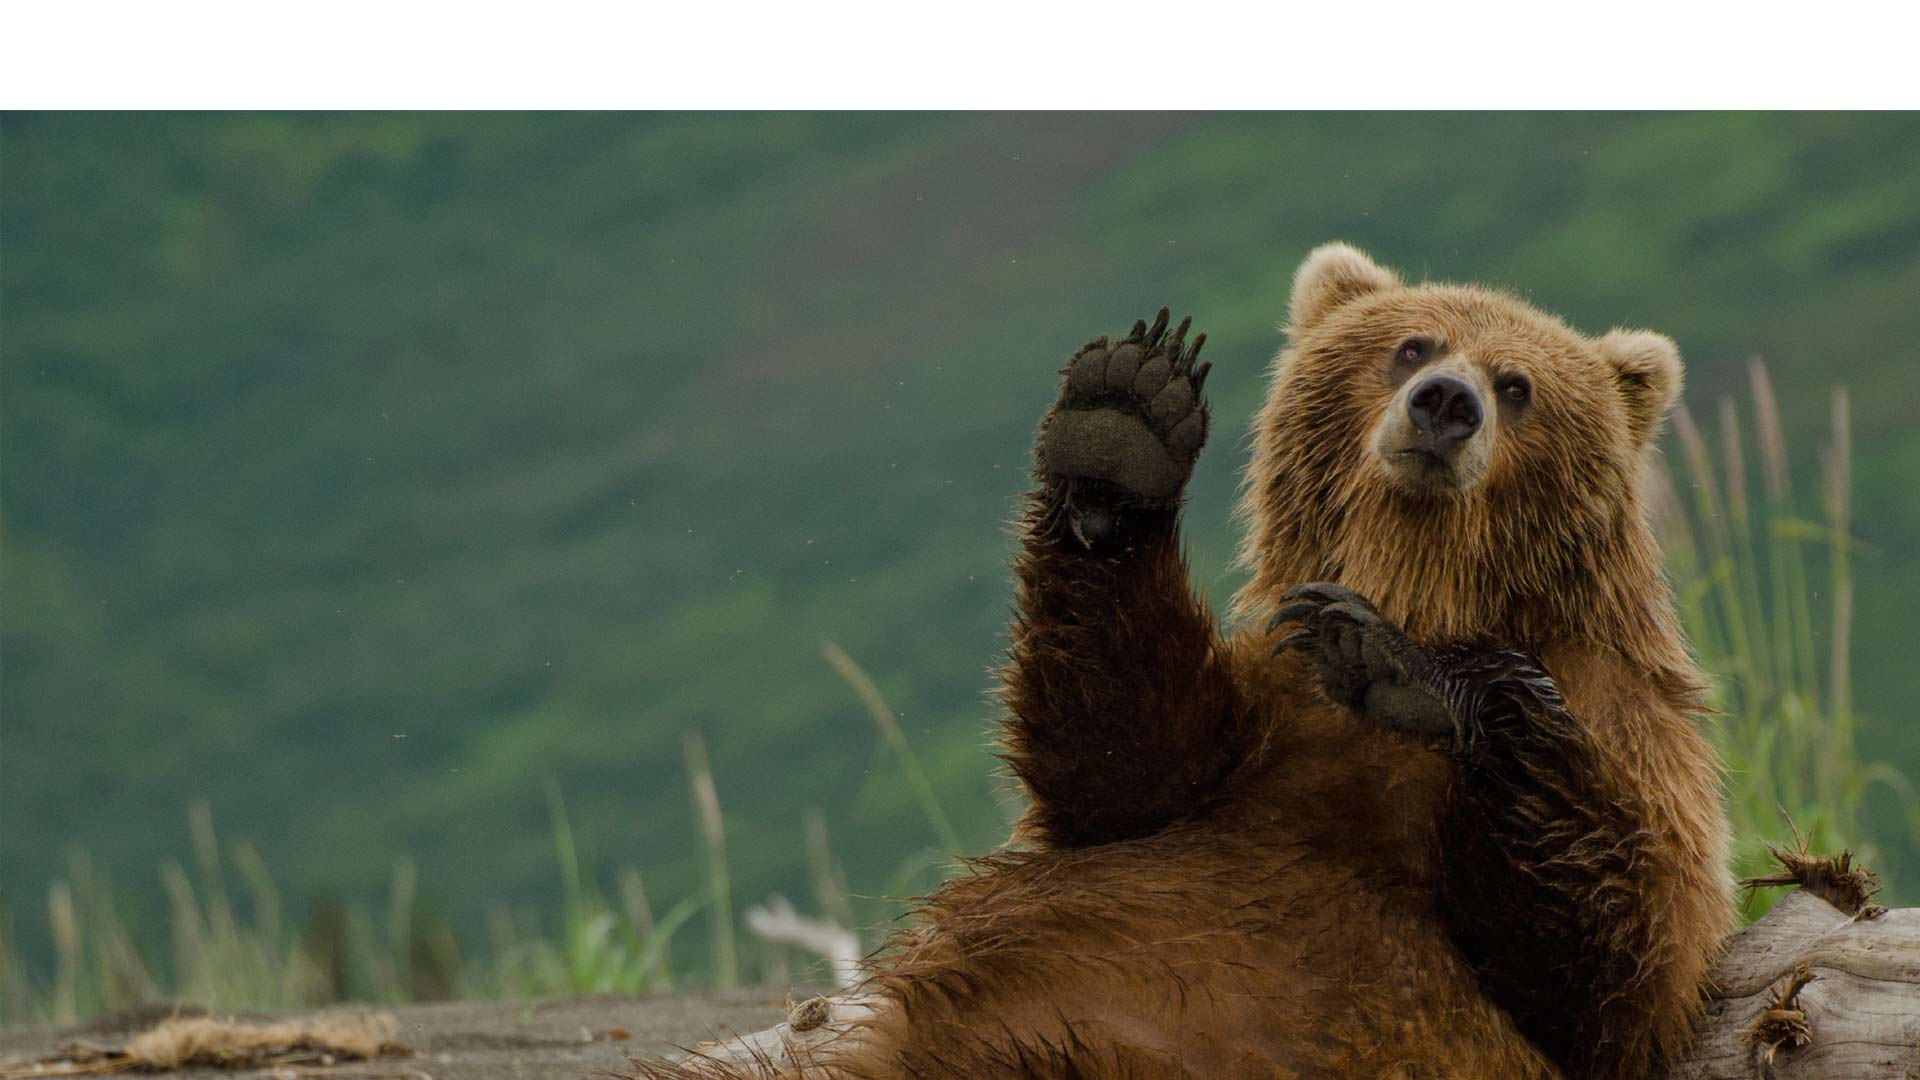 En redes sociales está circulando el video de un oso que saluda y atrapa un pedazo de pan, que le lanzó una pareja